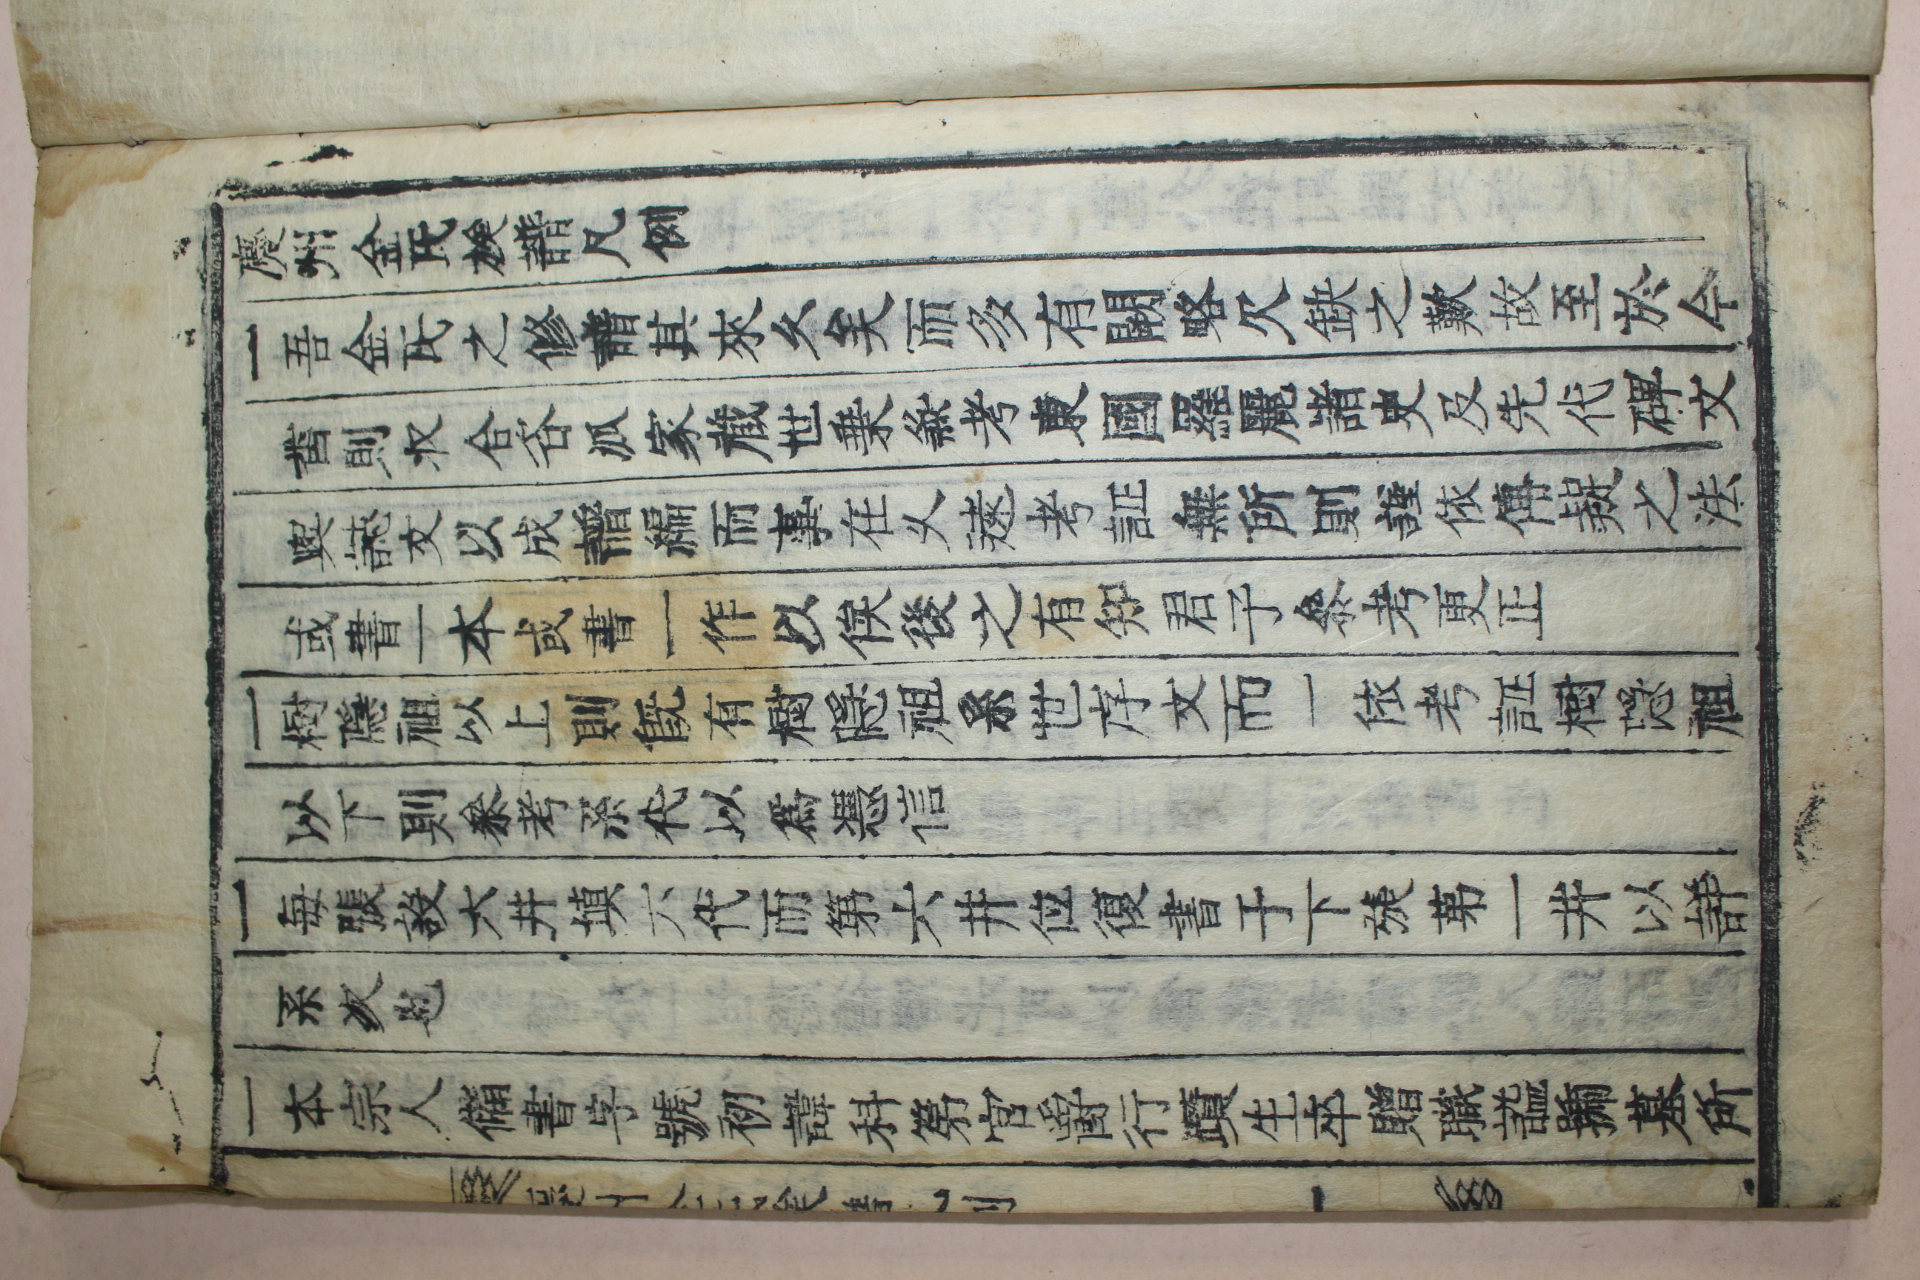 목활자본 경주김씨족보(慶州金氏族譜) 9책완질